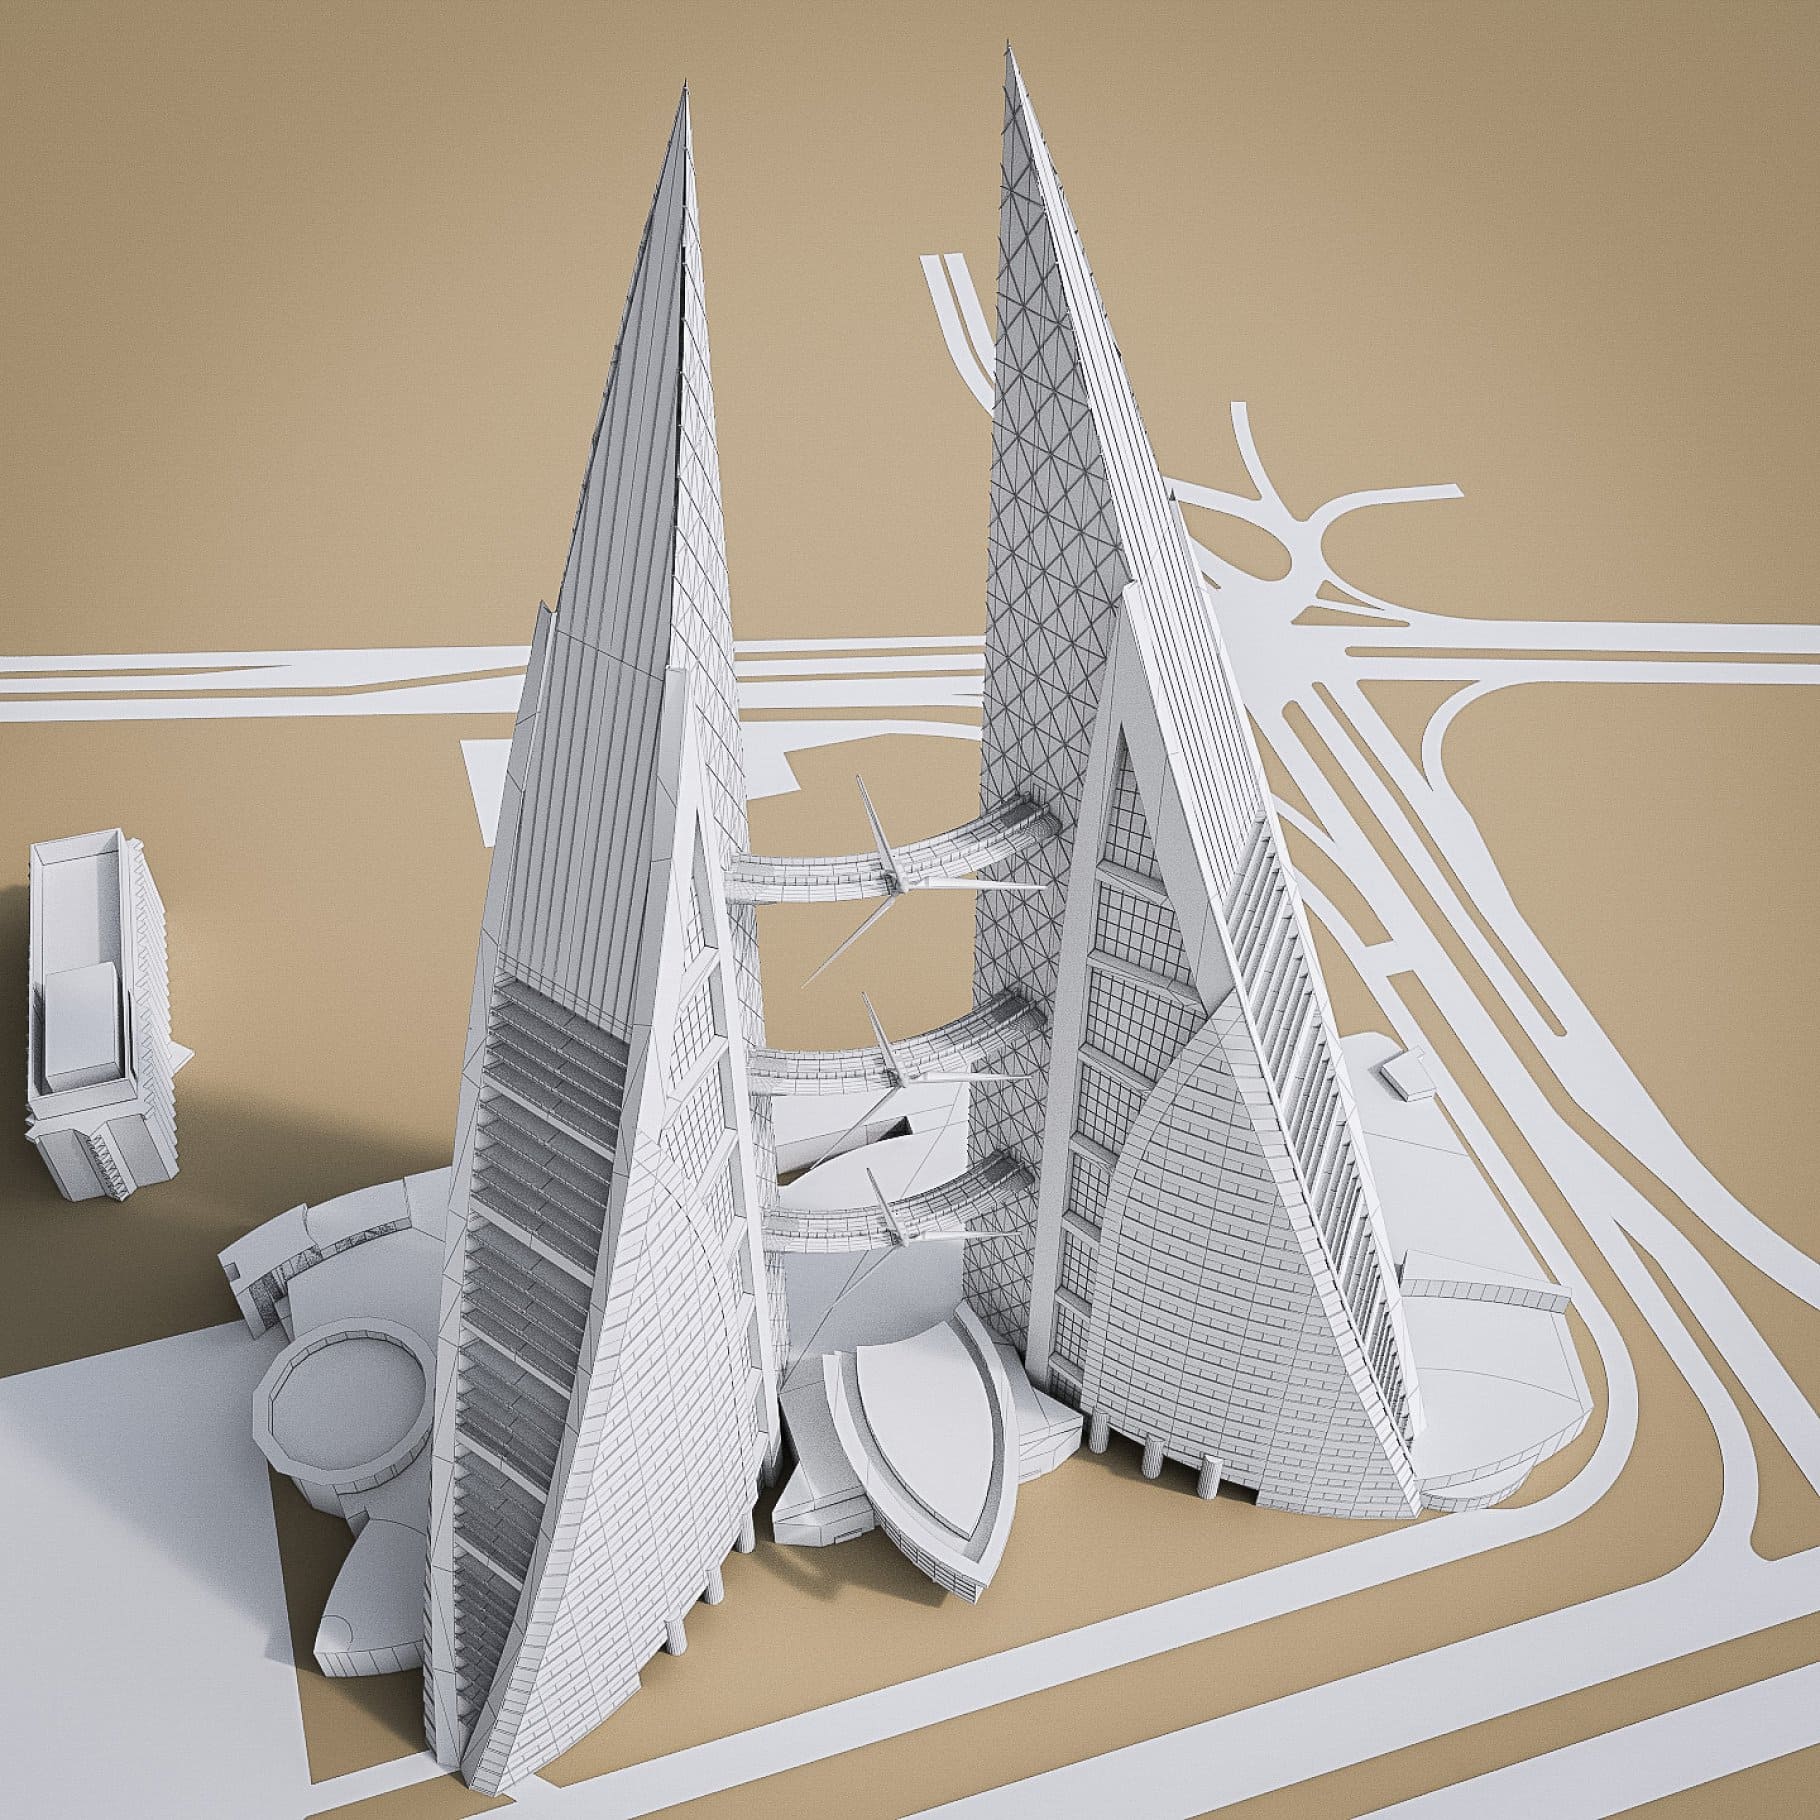 3D model of Bahrain World Trade Center.